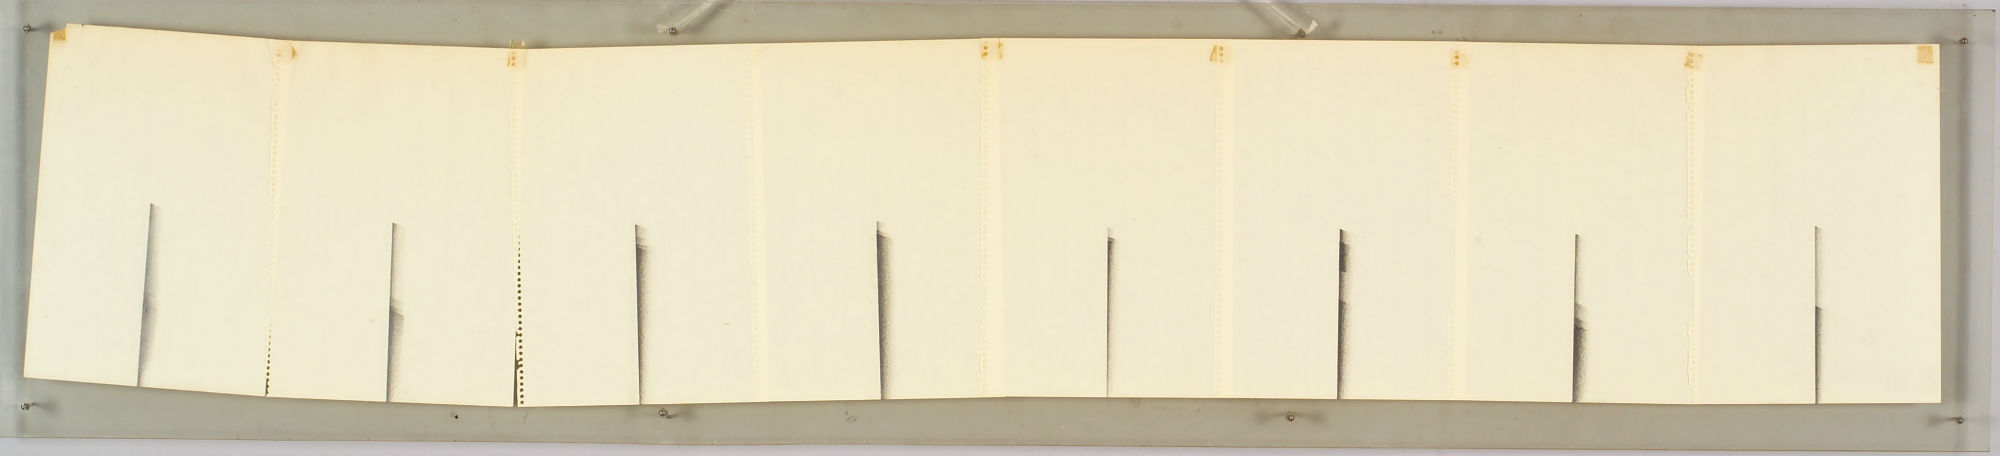 이동엽, 《상황》, 29*154, 종이에 연필